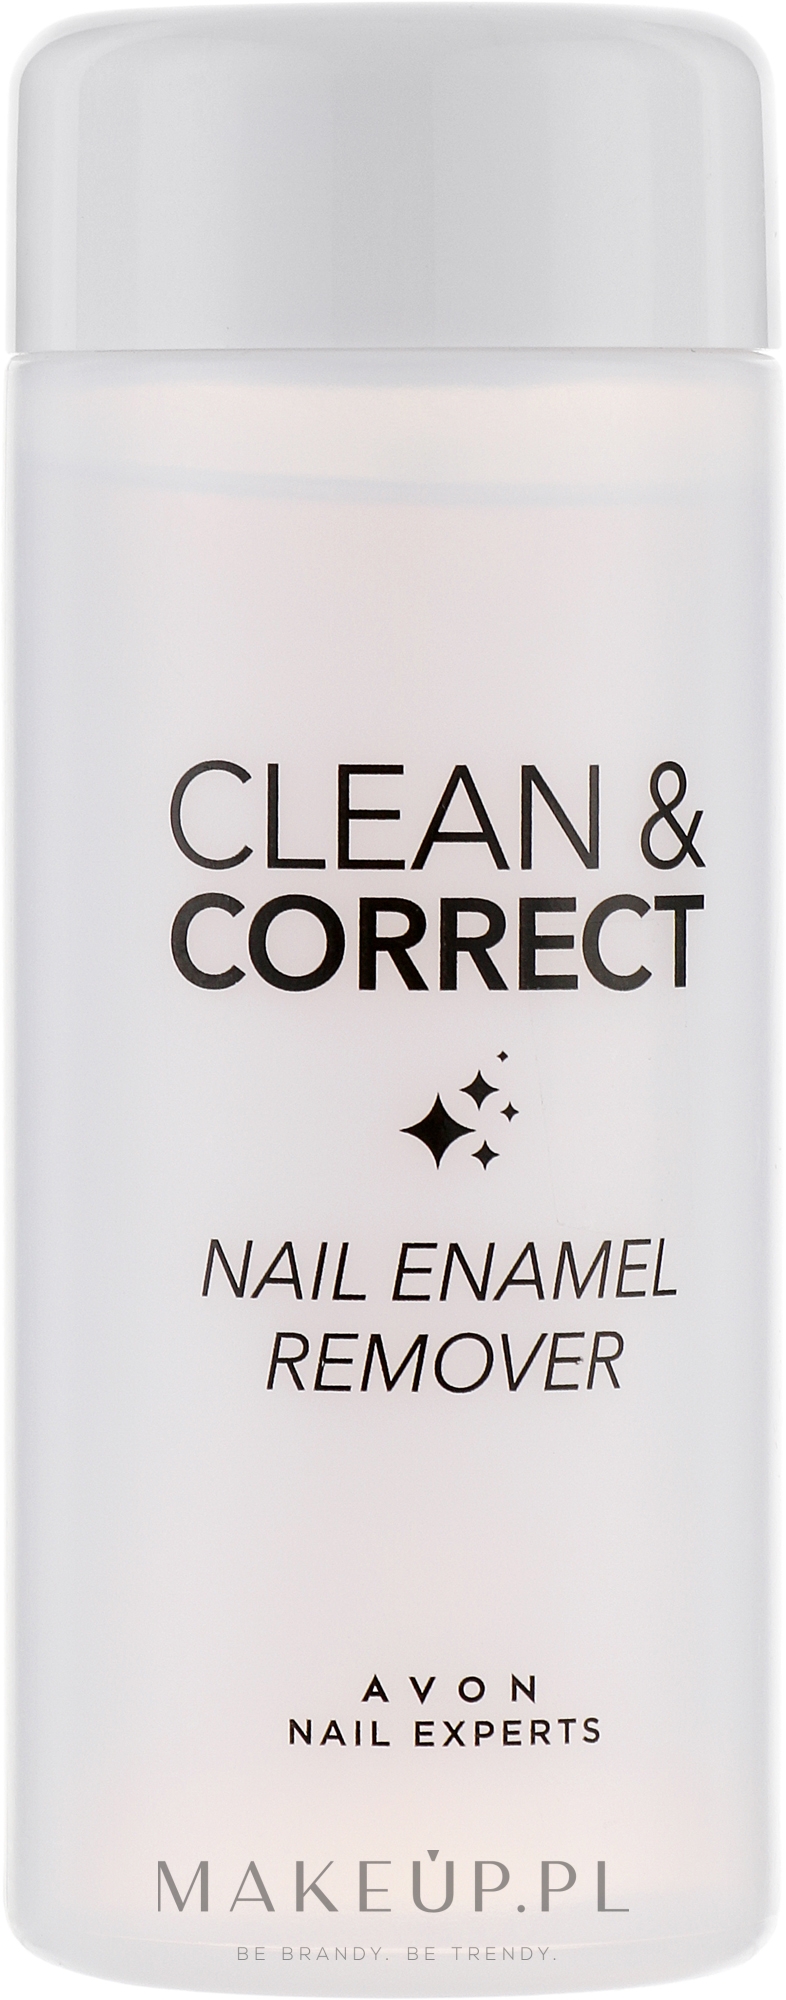 Zmywacz do paznokci - Avon Nail Experts Nail Enamel Remover — Zdjęcie 150 ml